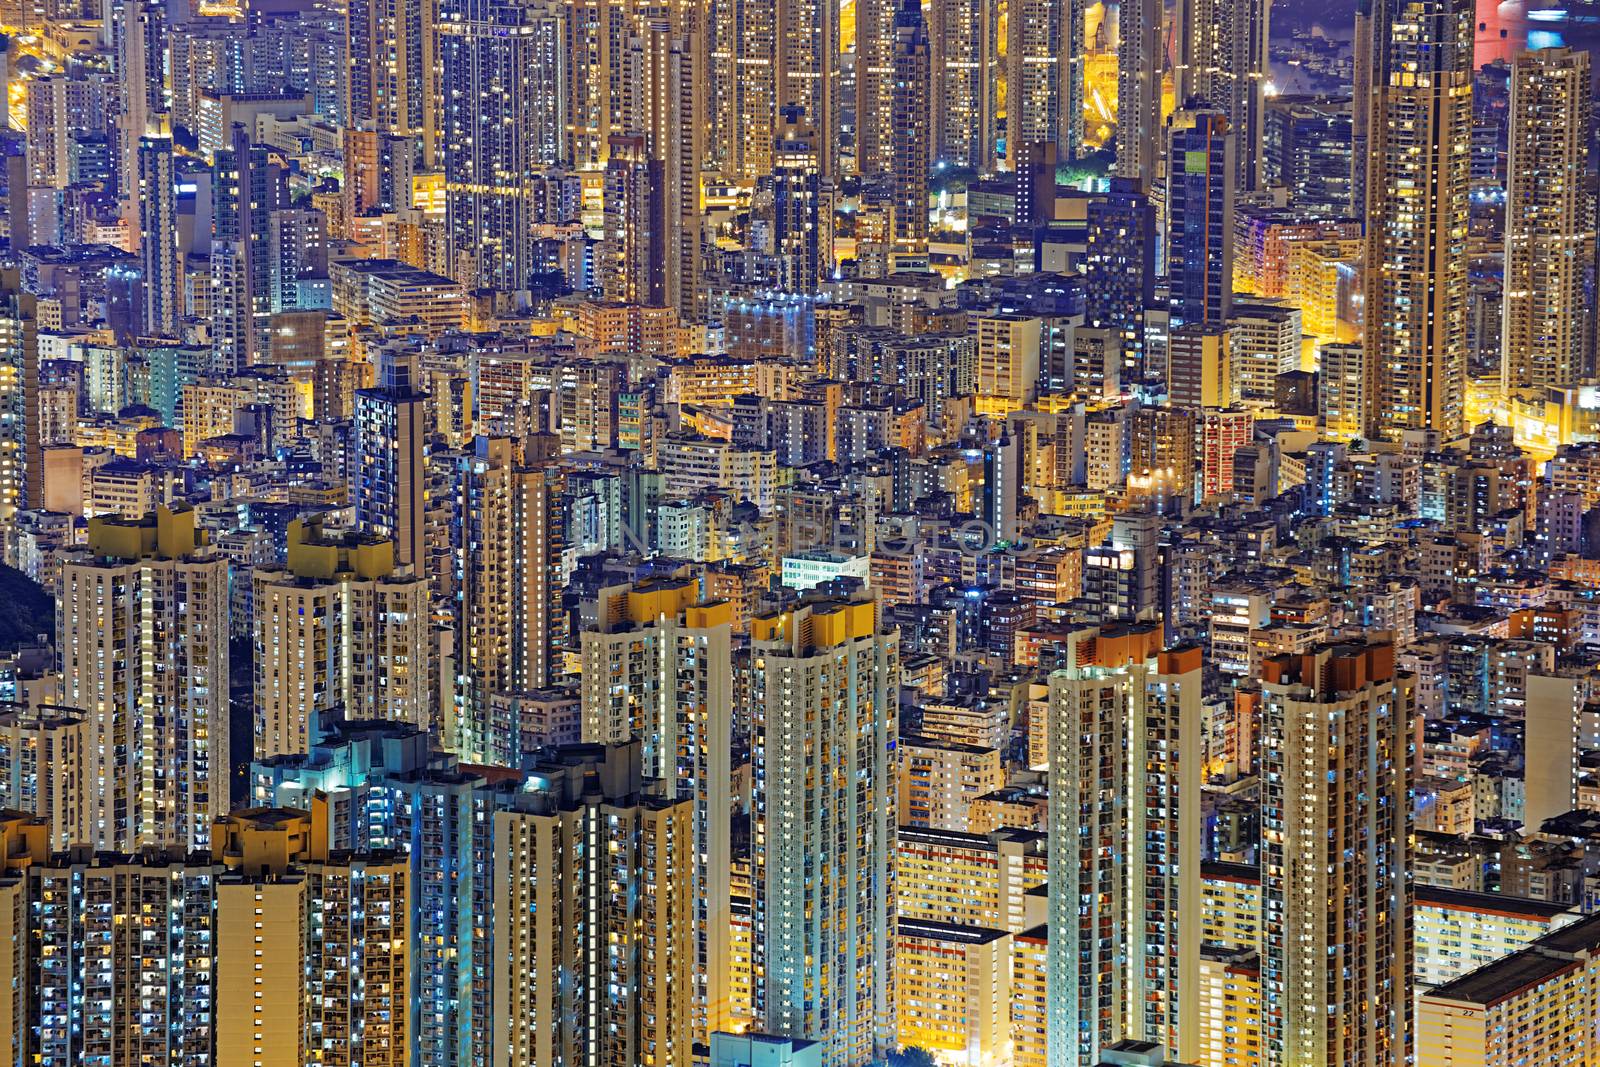 Hong Kong Public living housing apartment at night